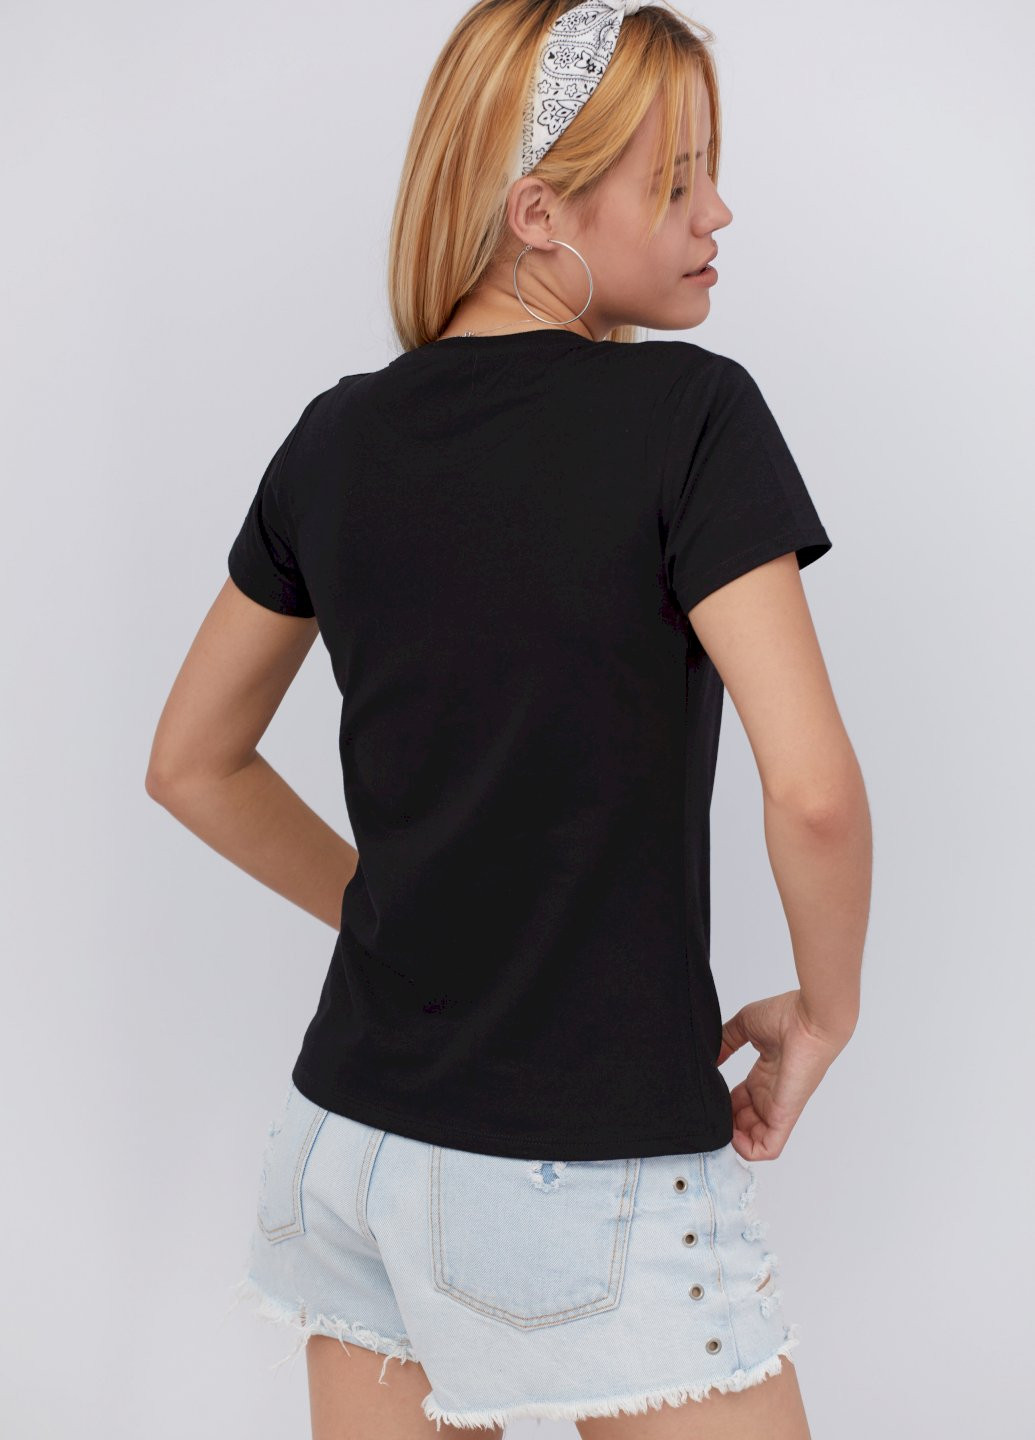 Черная демисезон футболка женская basic YAPPI